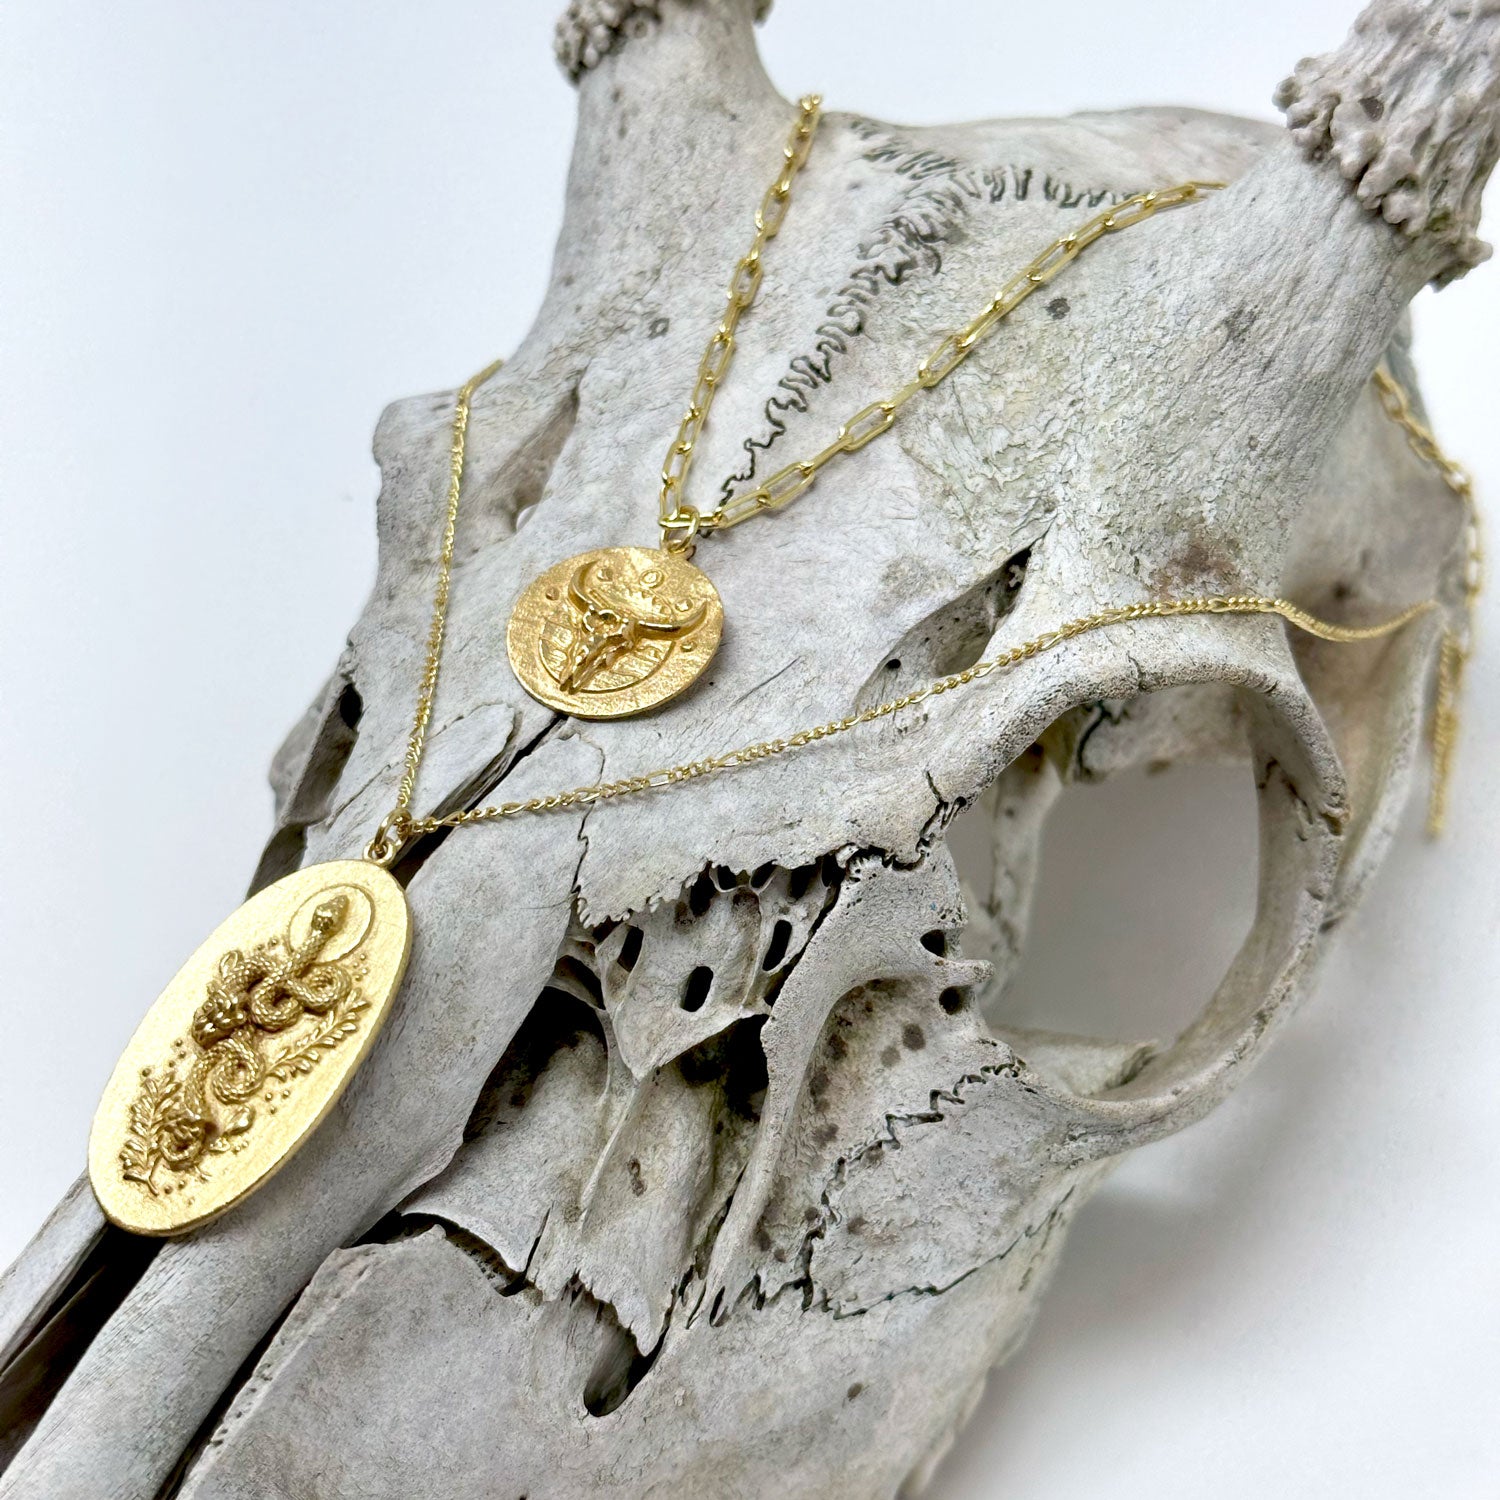 Spirit of the Wilderness - Desert Skull Pendant Necklace